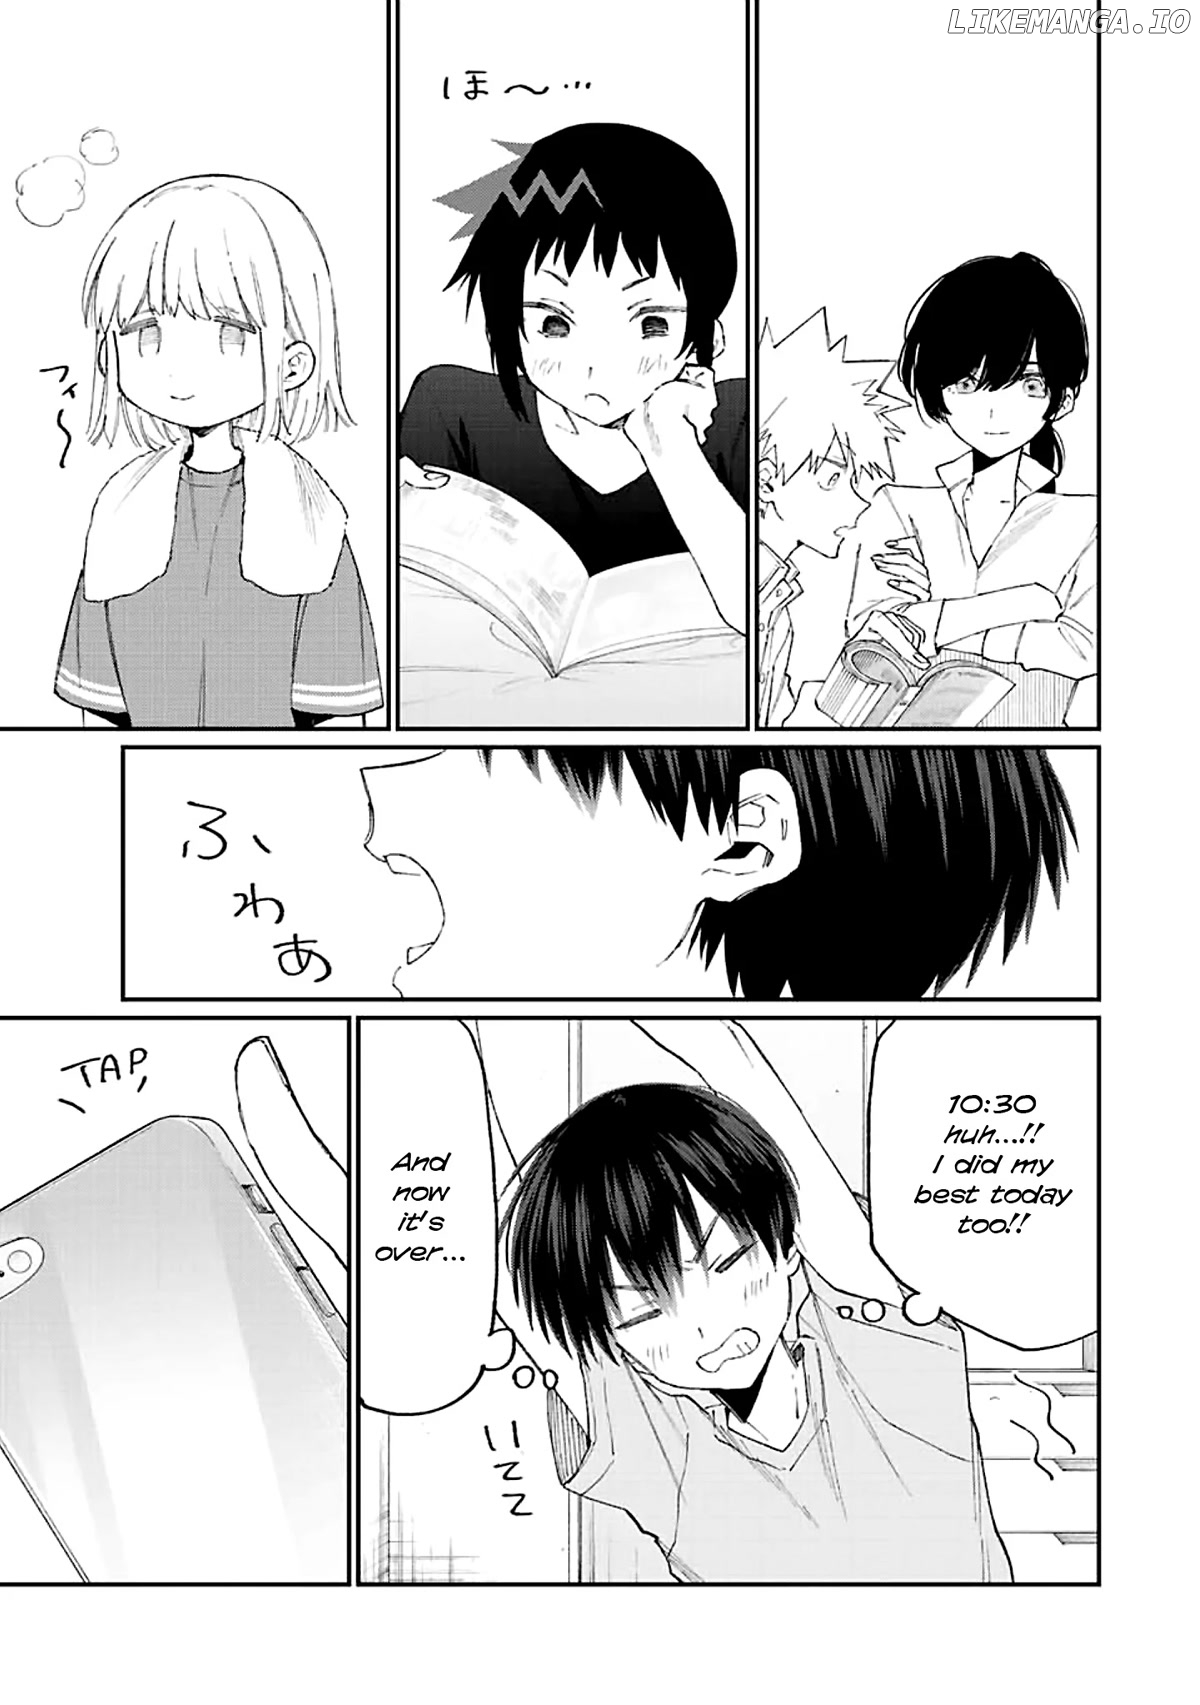 Shikimori's Not Just A Cutie chapter 158 - page 8